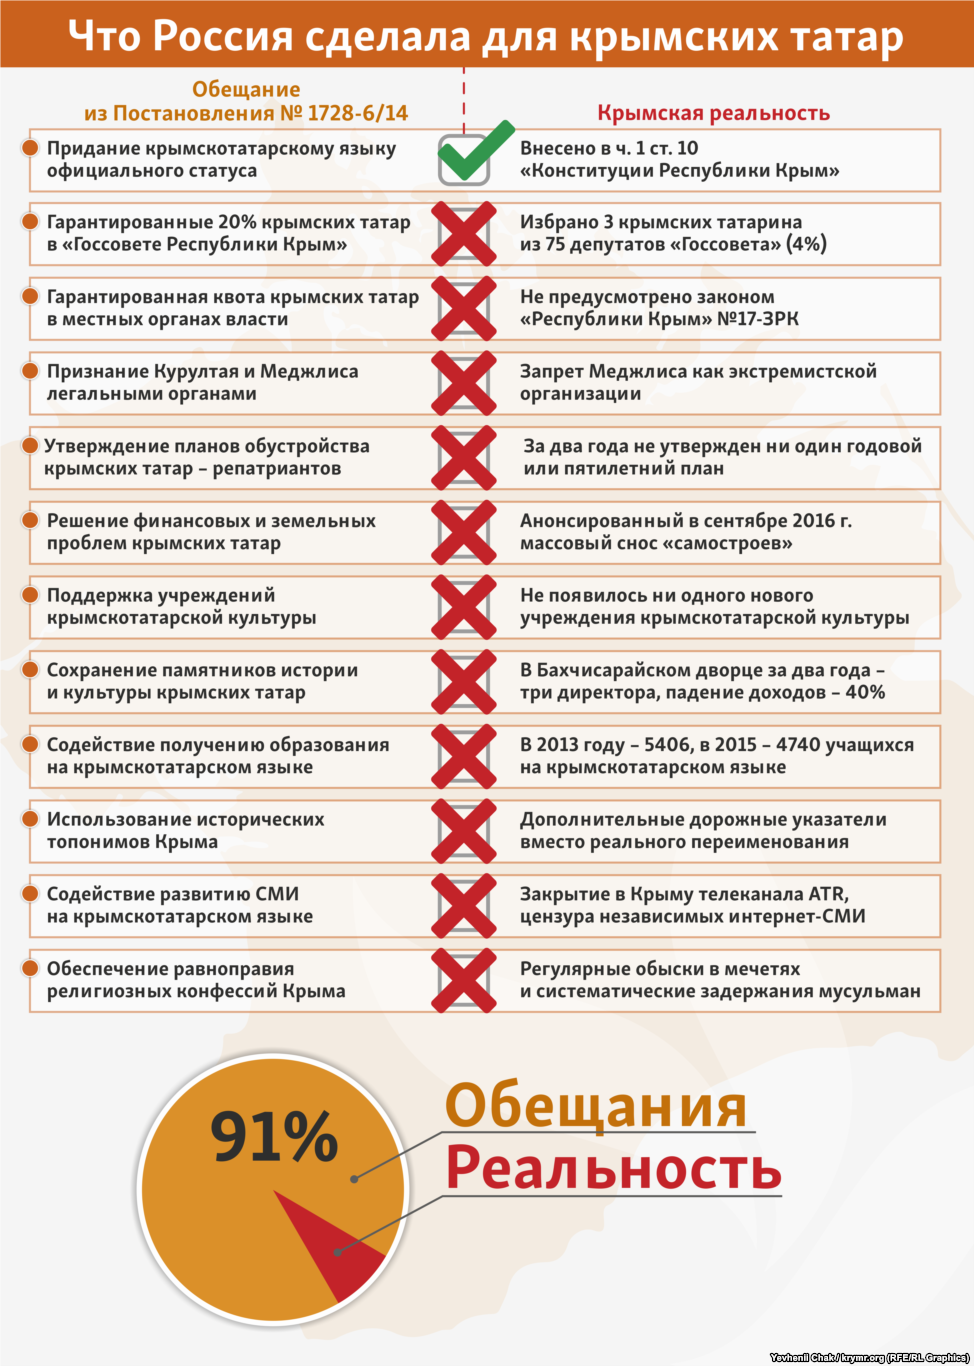 Російські окупанти не виконали 91% обіцянок кримським татарам, - ЗМІ - фото 1